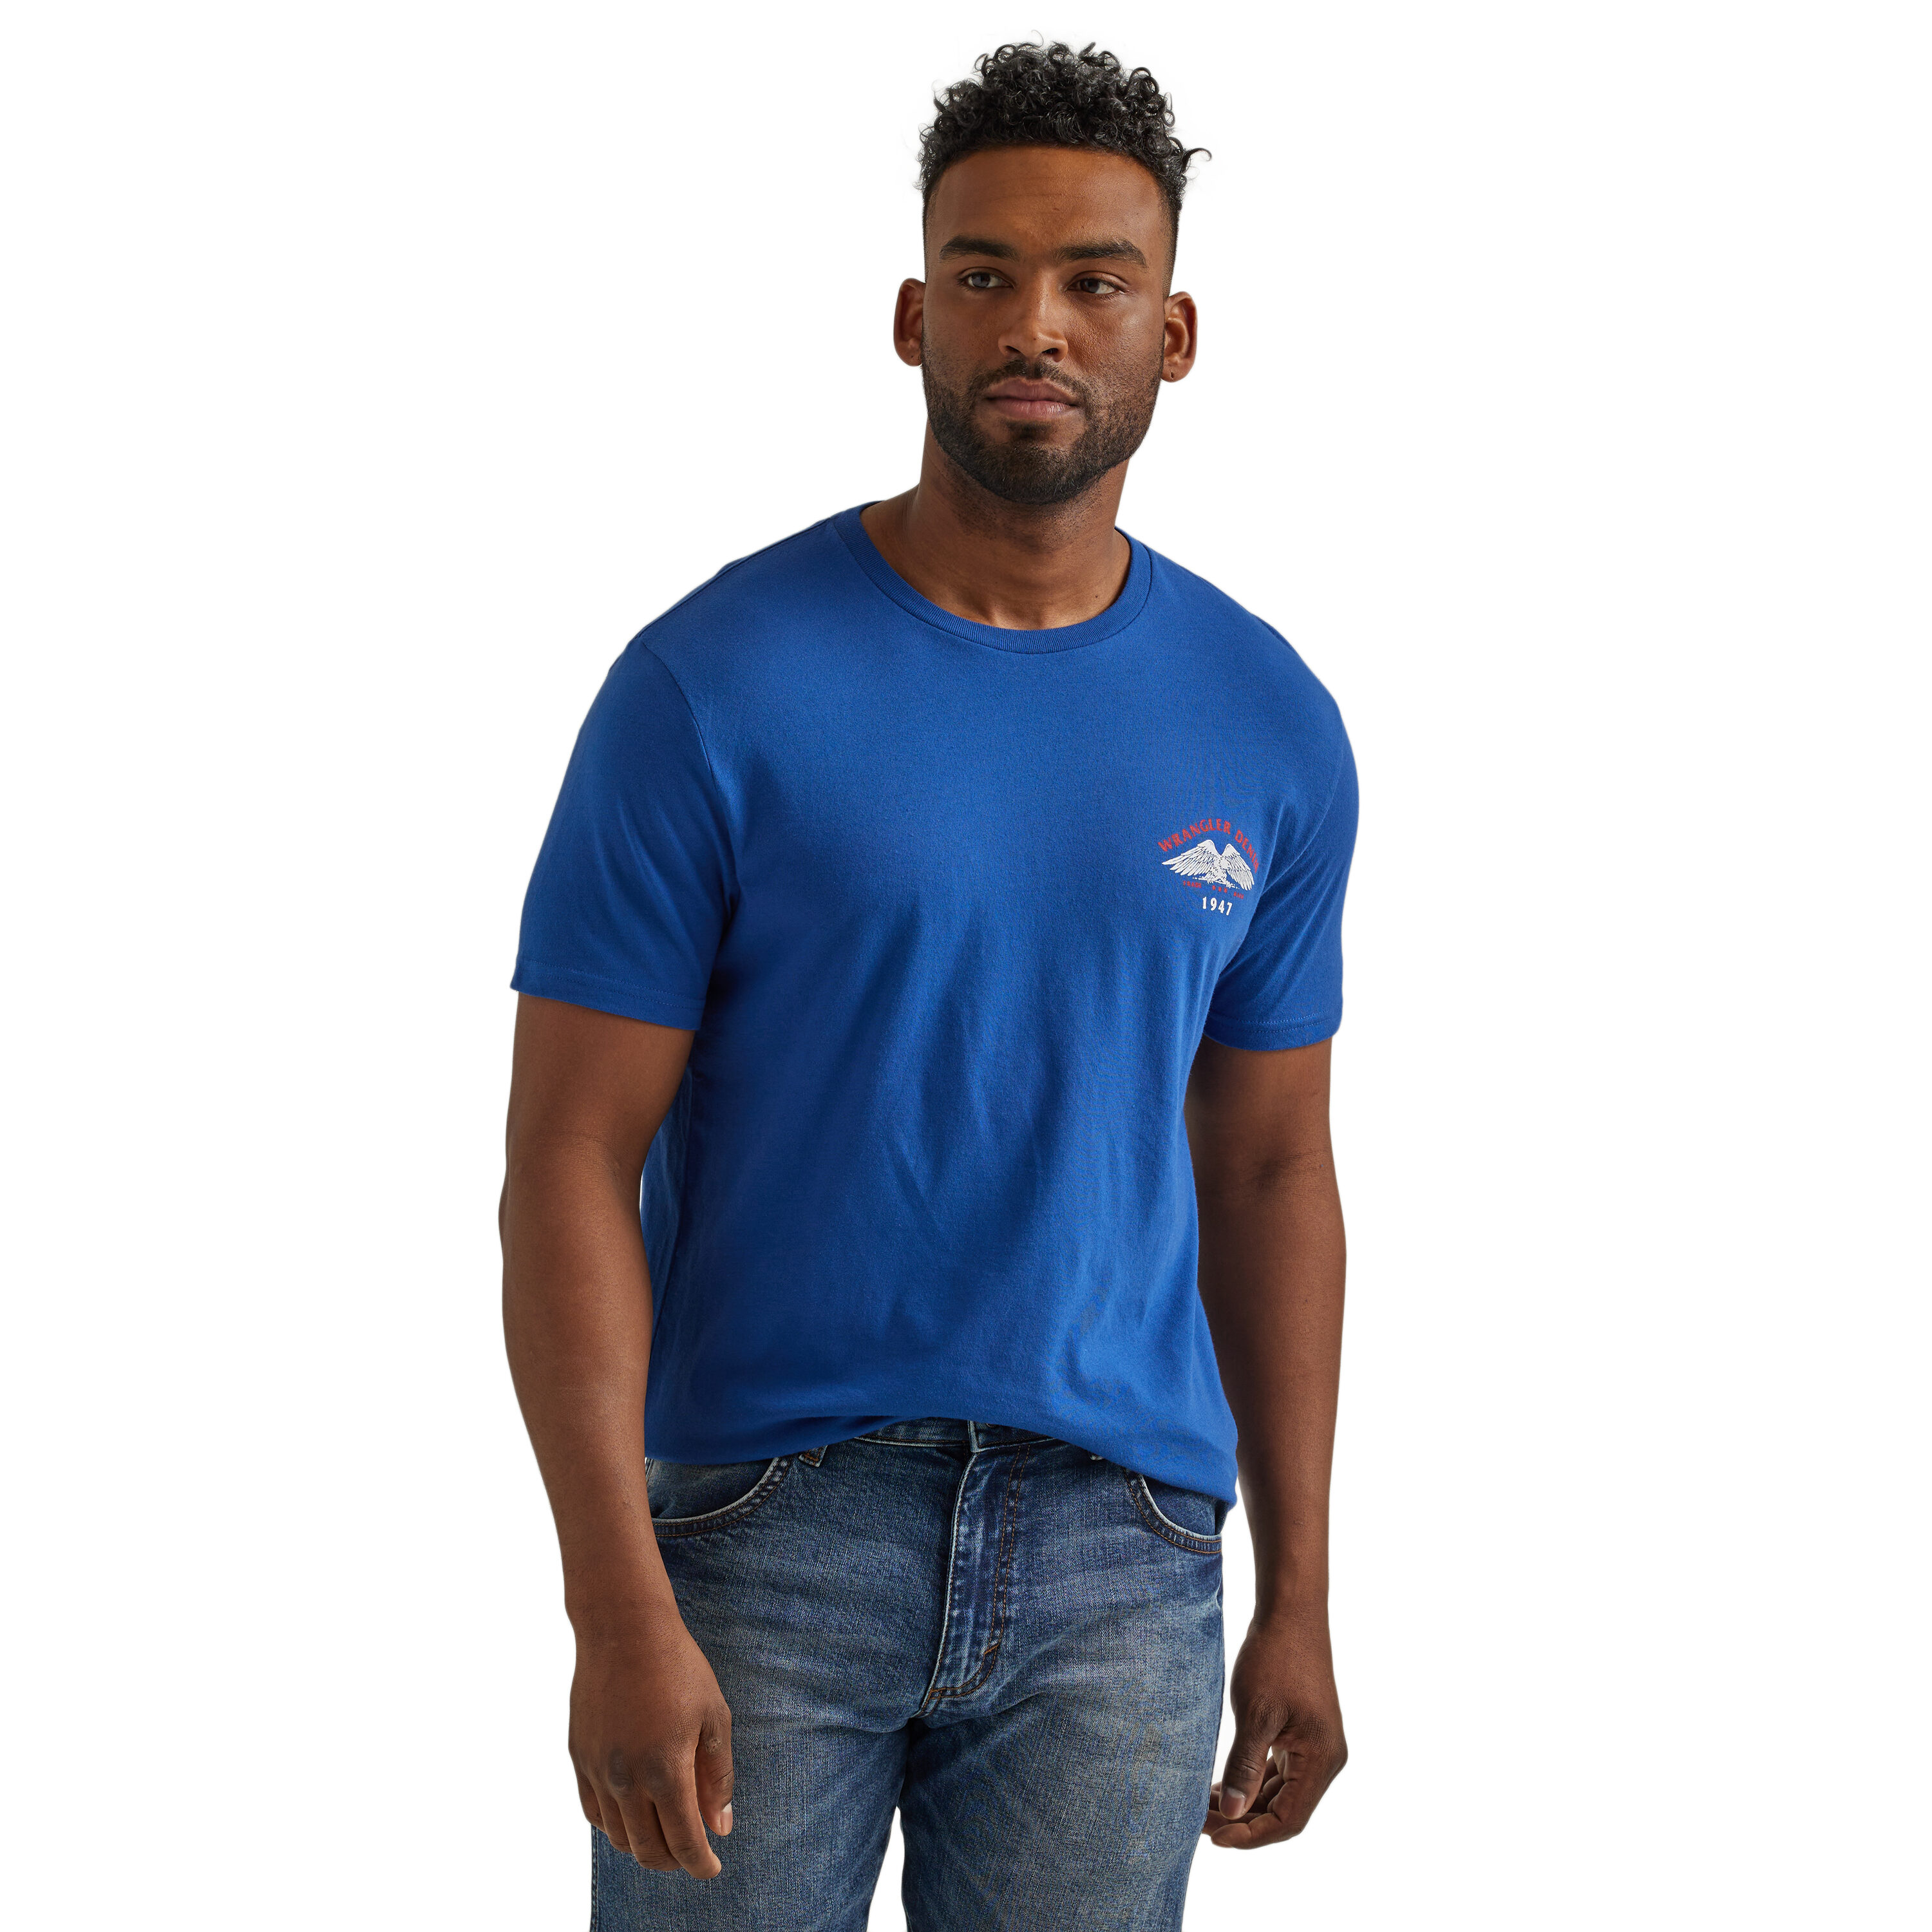 Wrangler Men's Short Sleeve Woven Shirt, Sizes S-5XL